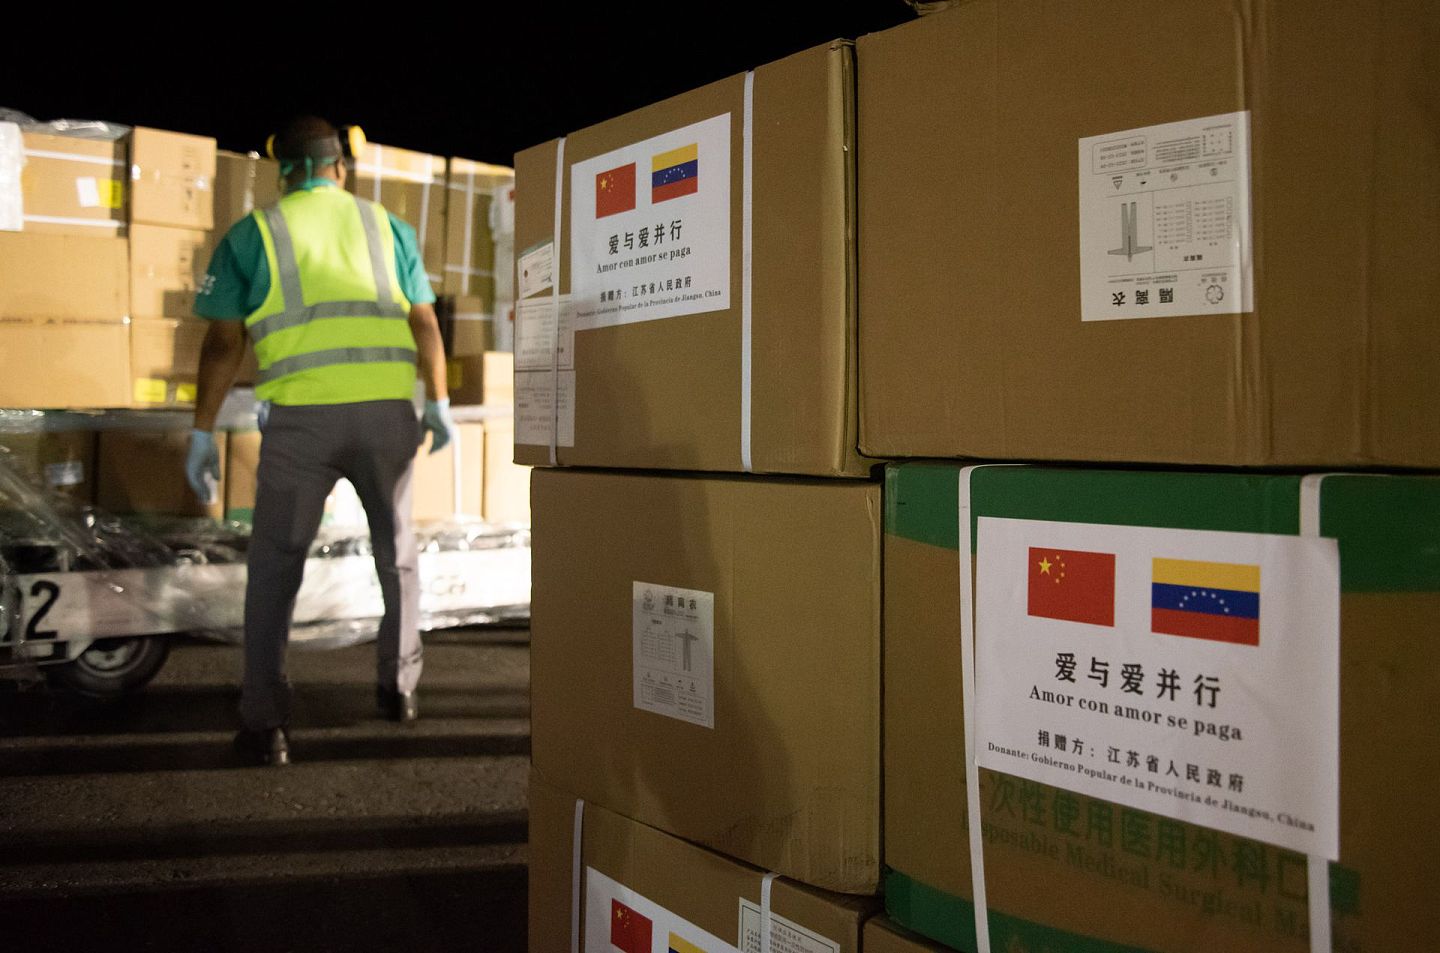 中国向委内瑞拉派遣的抗疫医疗专家组3月30日抵委。中方捐赠的检测试剂、防护用品、药品等物资也一同抵达。（新华社）